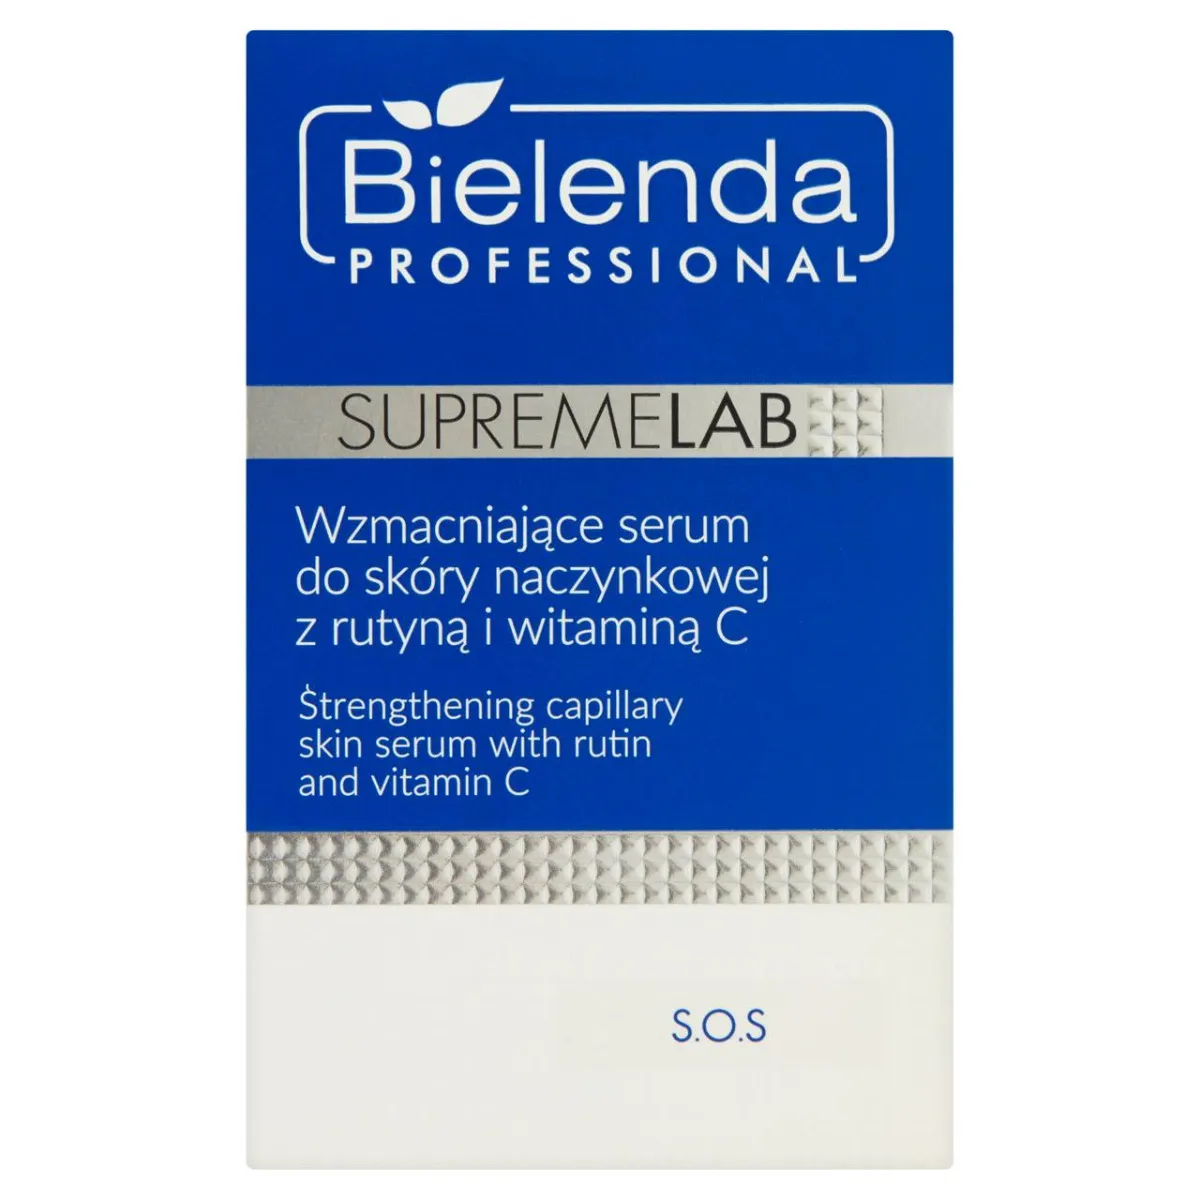 Bielenda Professional SupremeLab, wzmacniające serum do skóry naczynkowej z rutyną i witaminą C, 15 ml 